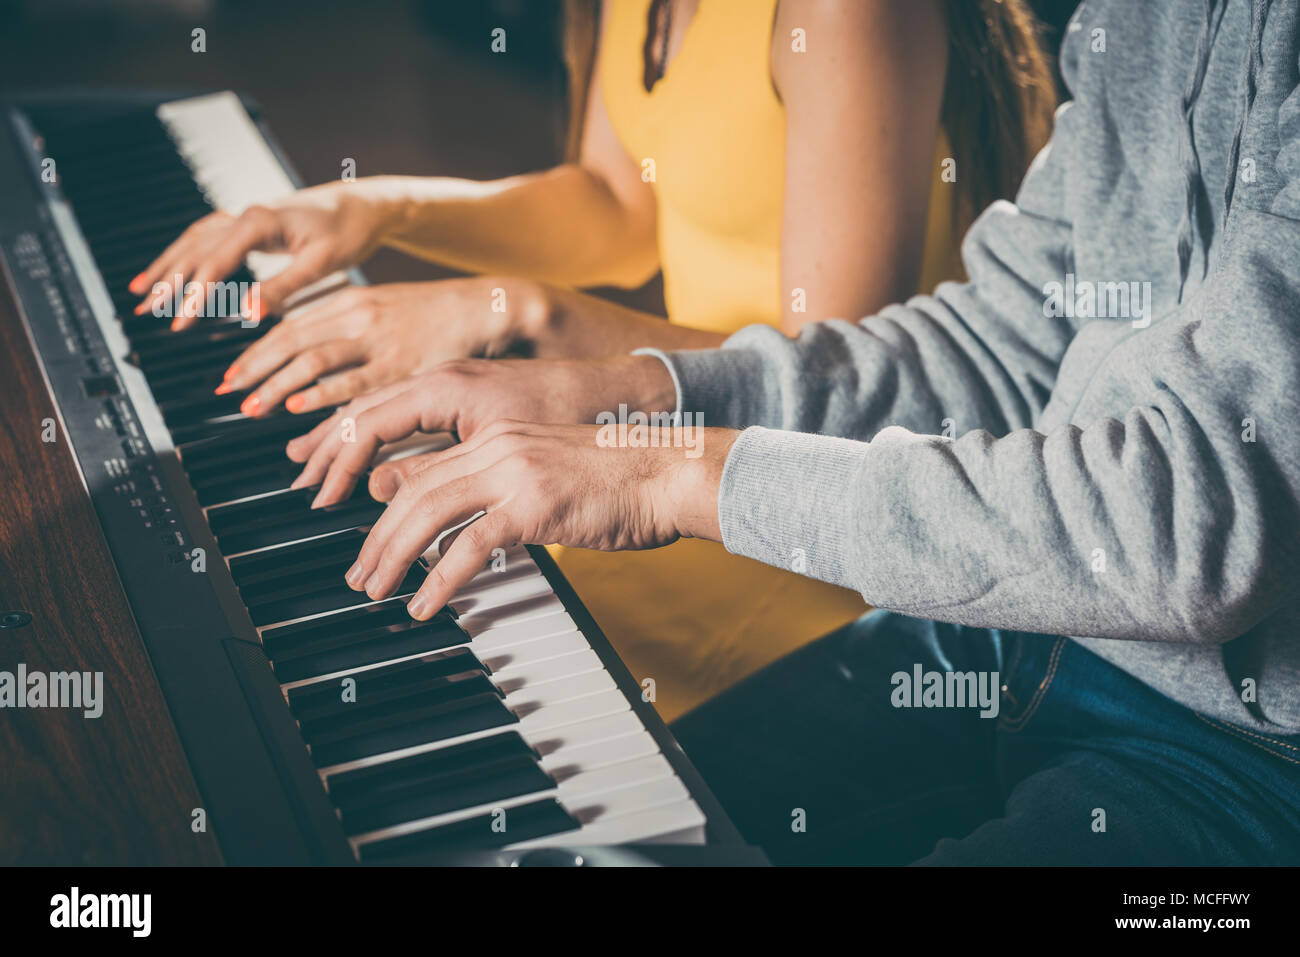 Les joueurs de piano à quatre mains de jouer ensemble Banque D'Images